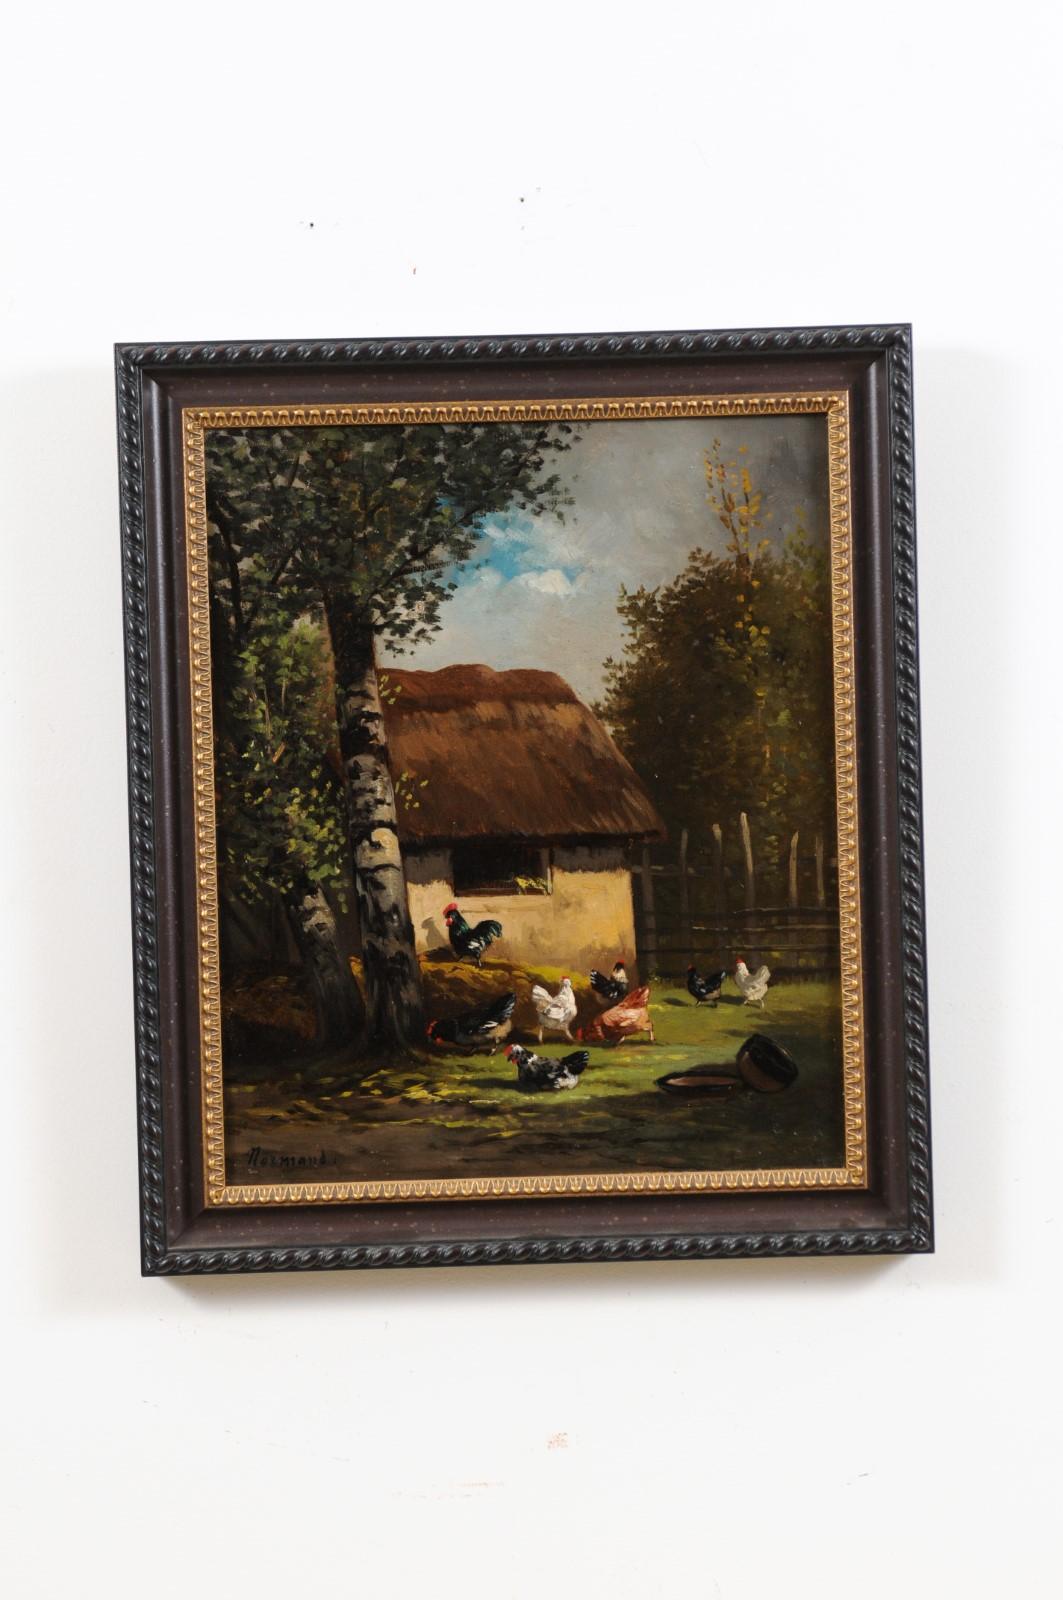 Une petite peinture française à l'huile sur toile encadrée du 19ème siècle, représentant un coq et des poulets dans une basse-cour, signée Normand. Créée en France au XIXe siècle, cette huile sur toile encadrée nous séduit par son humble